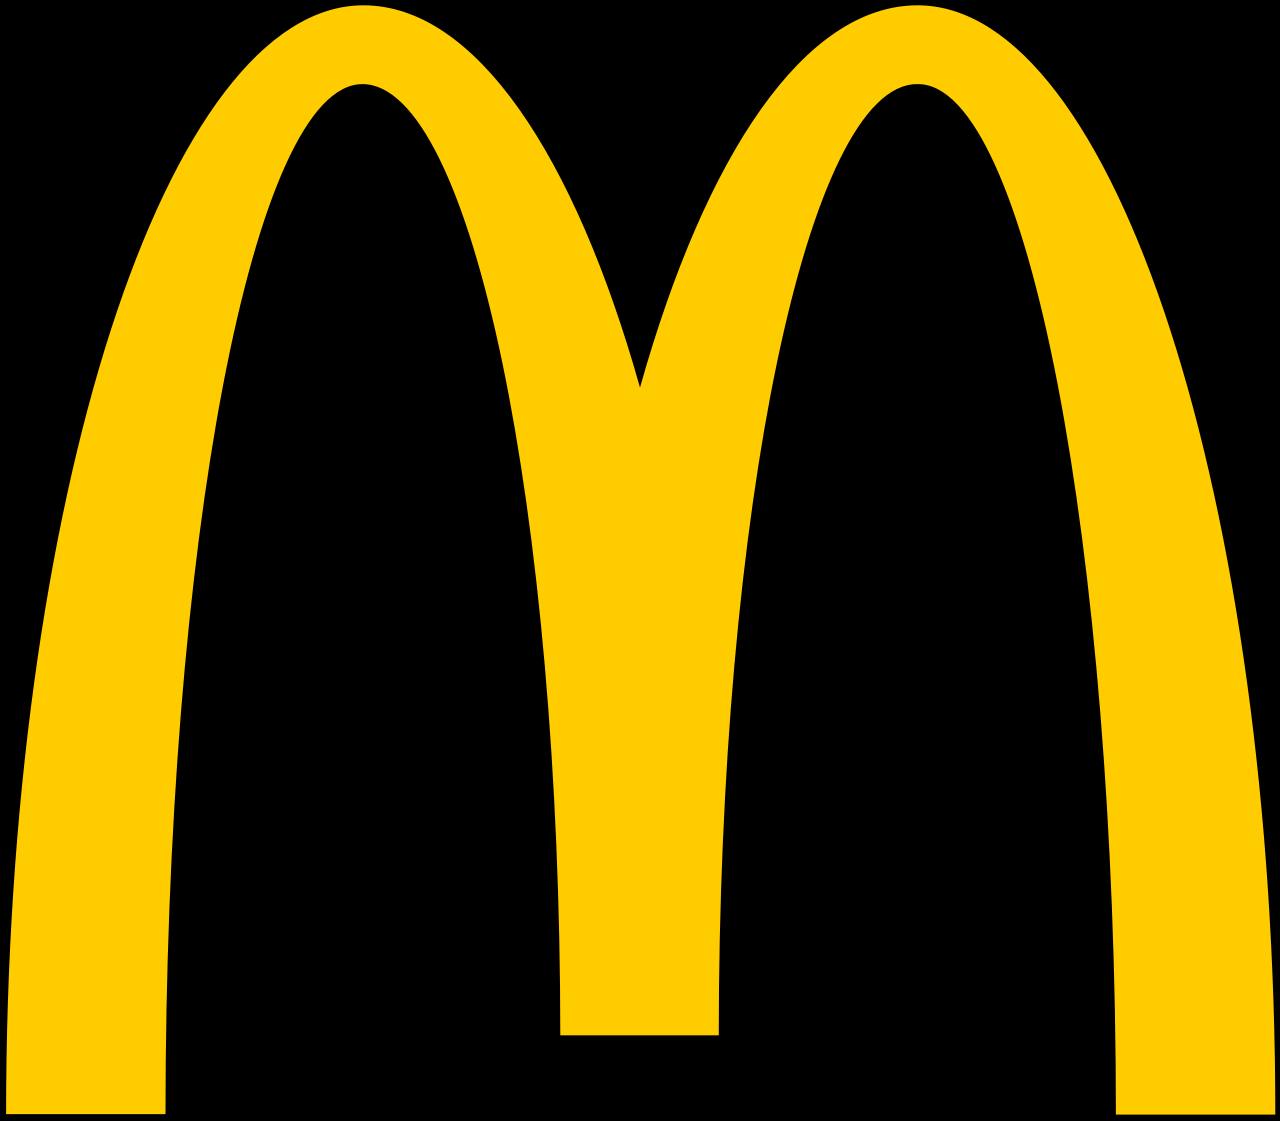 McDonalds Communism